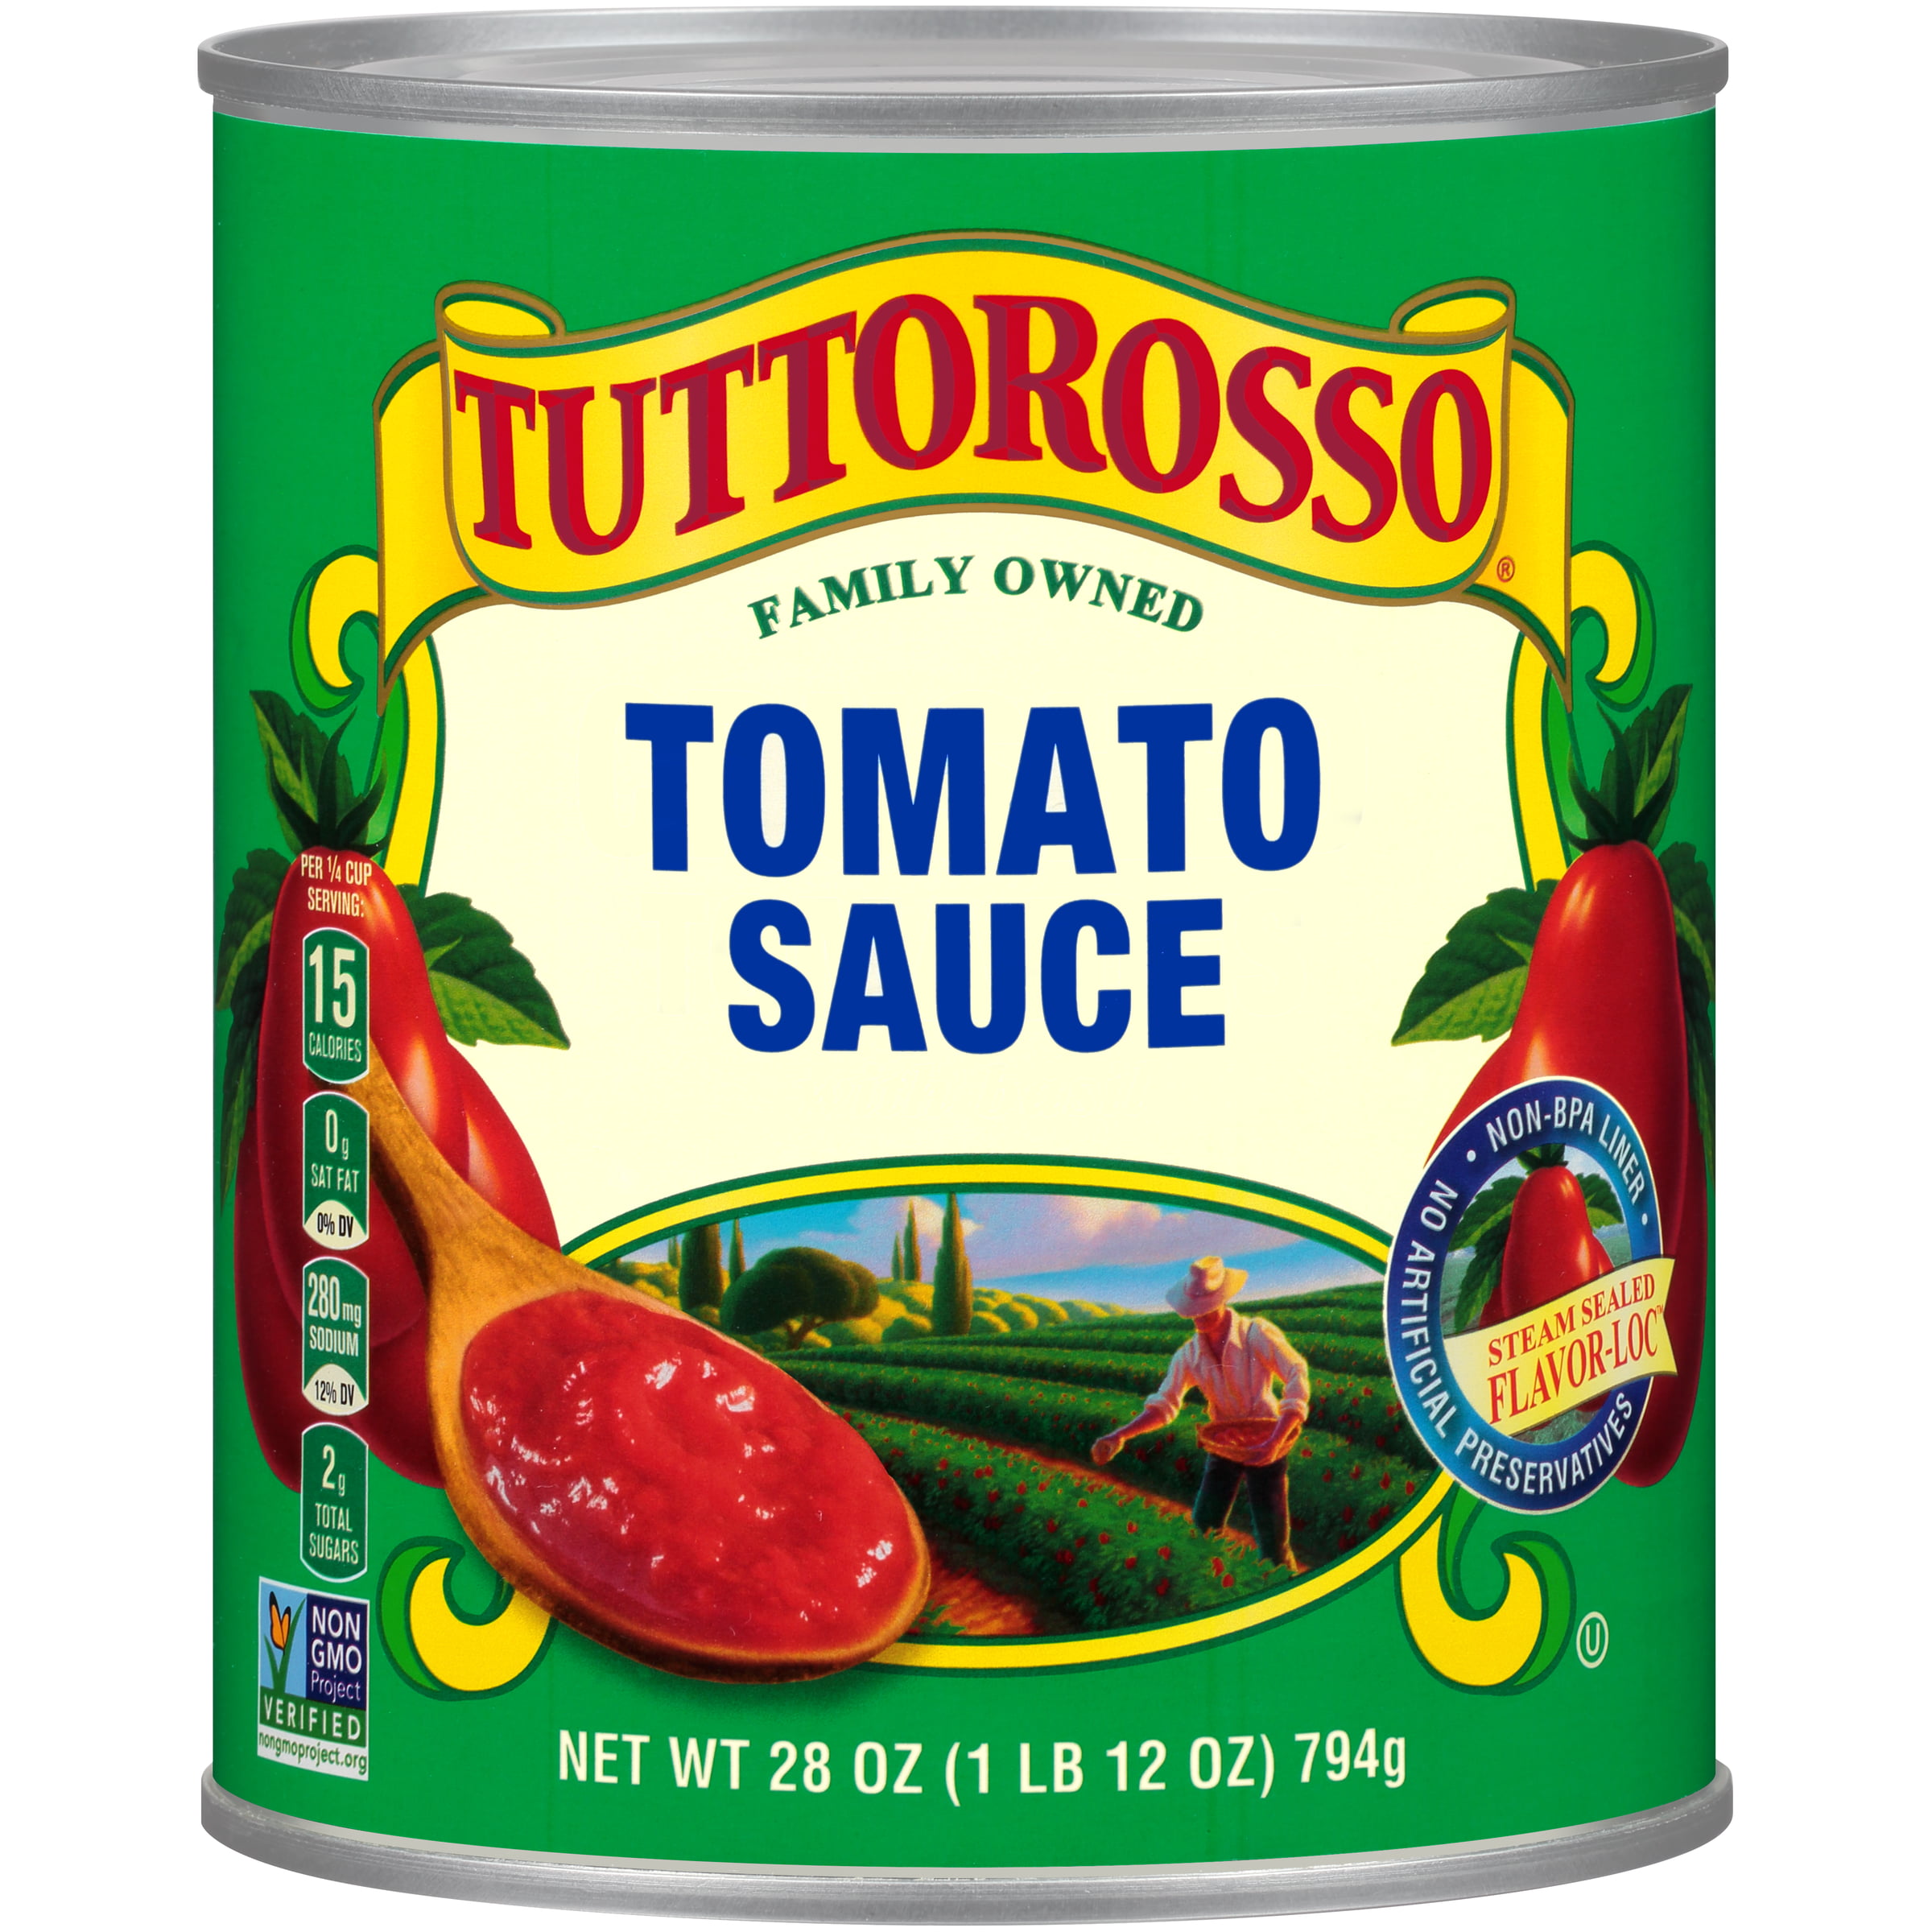 Tuttorosso Tomato Sauce 28oz Can